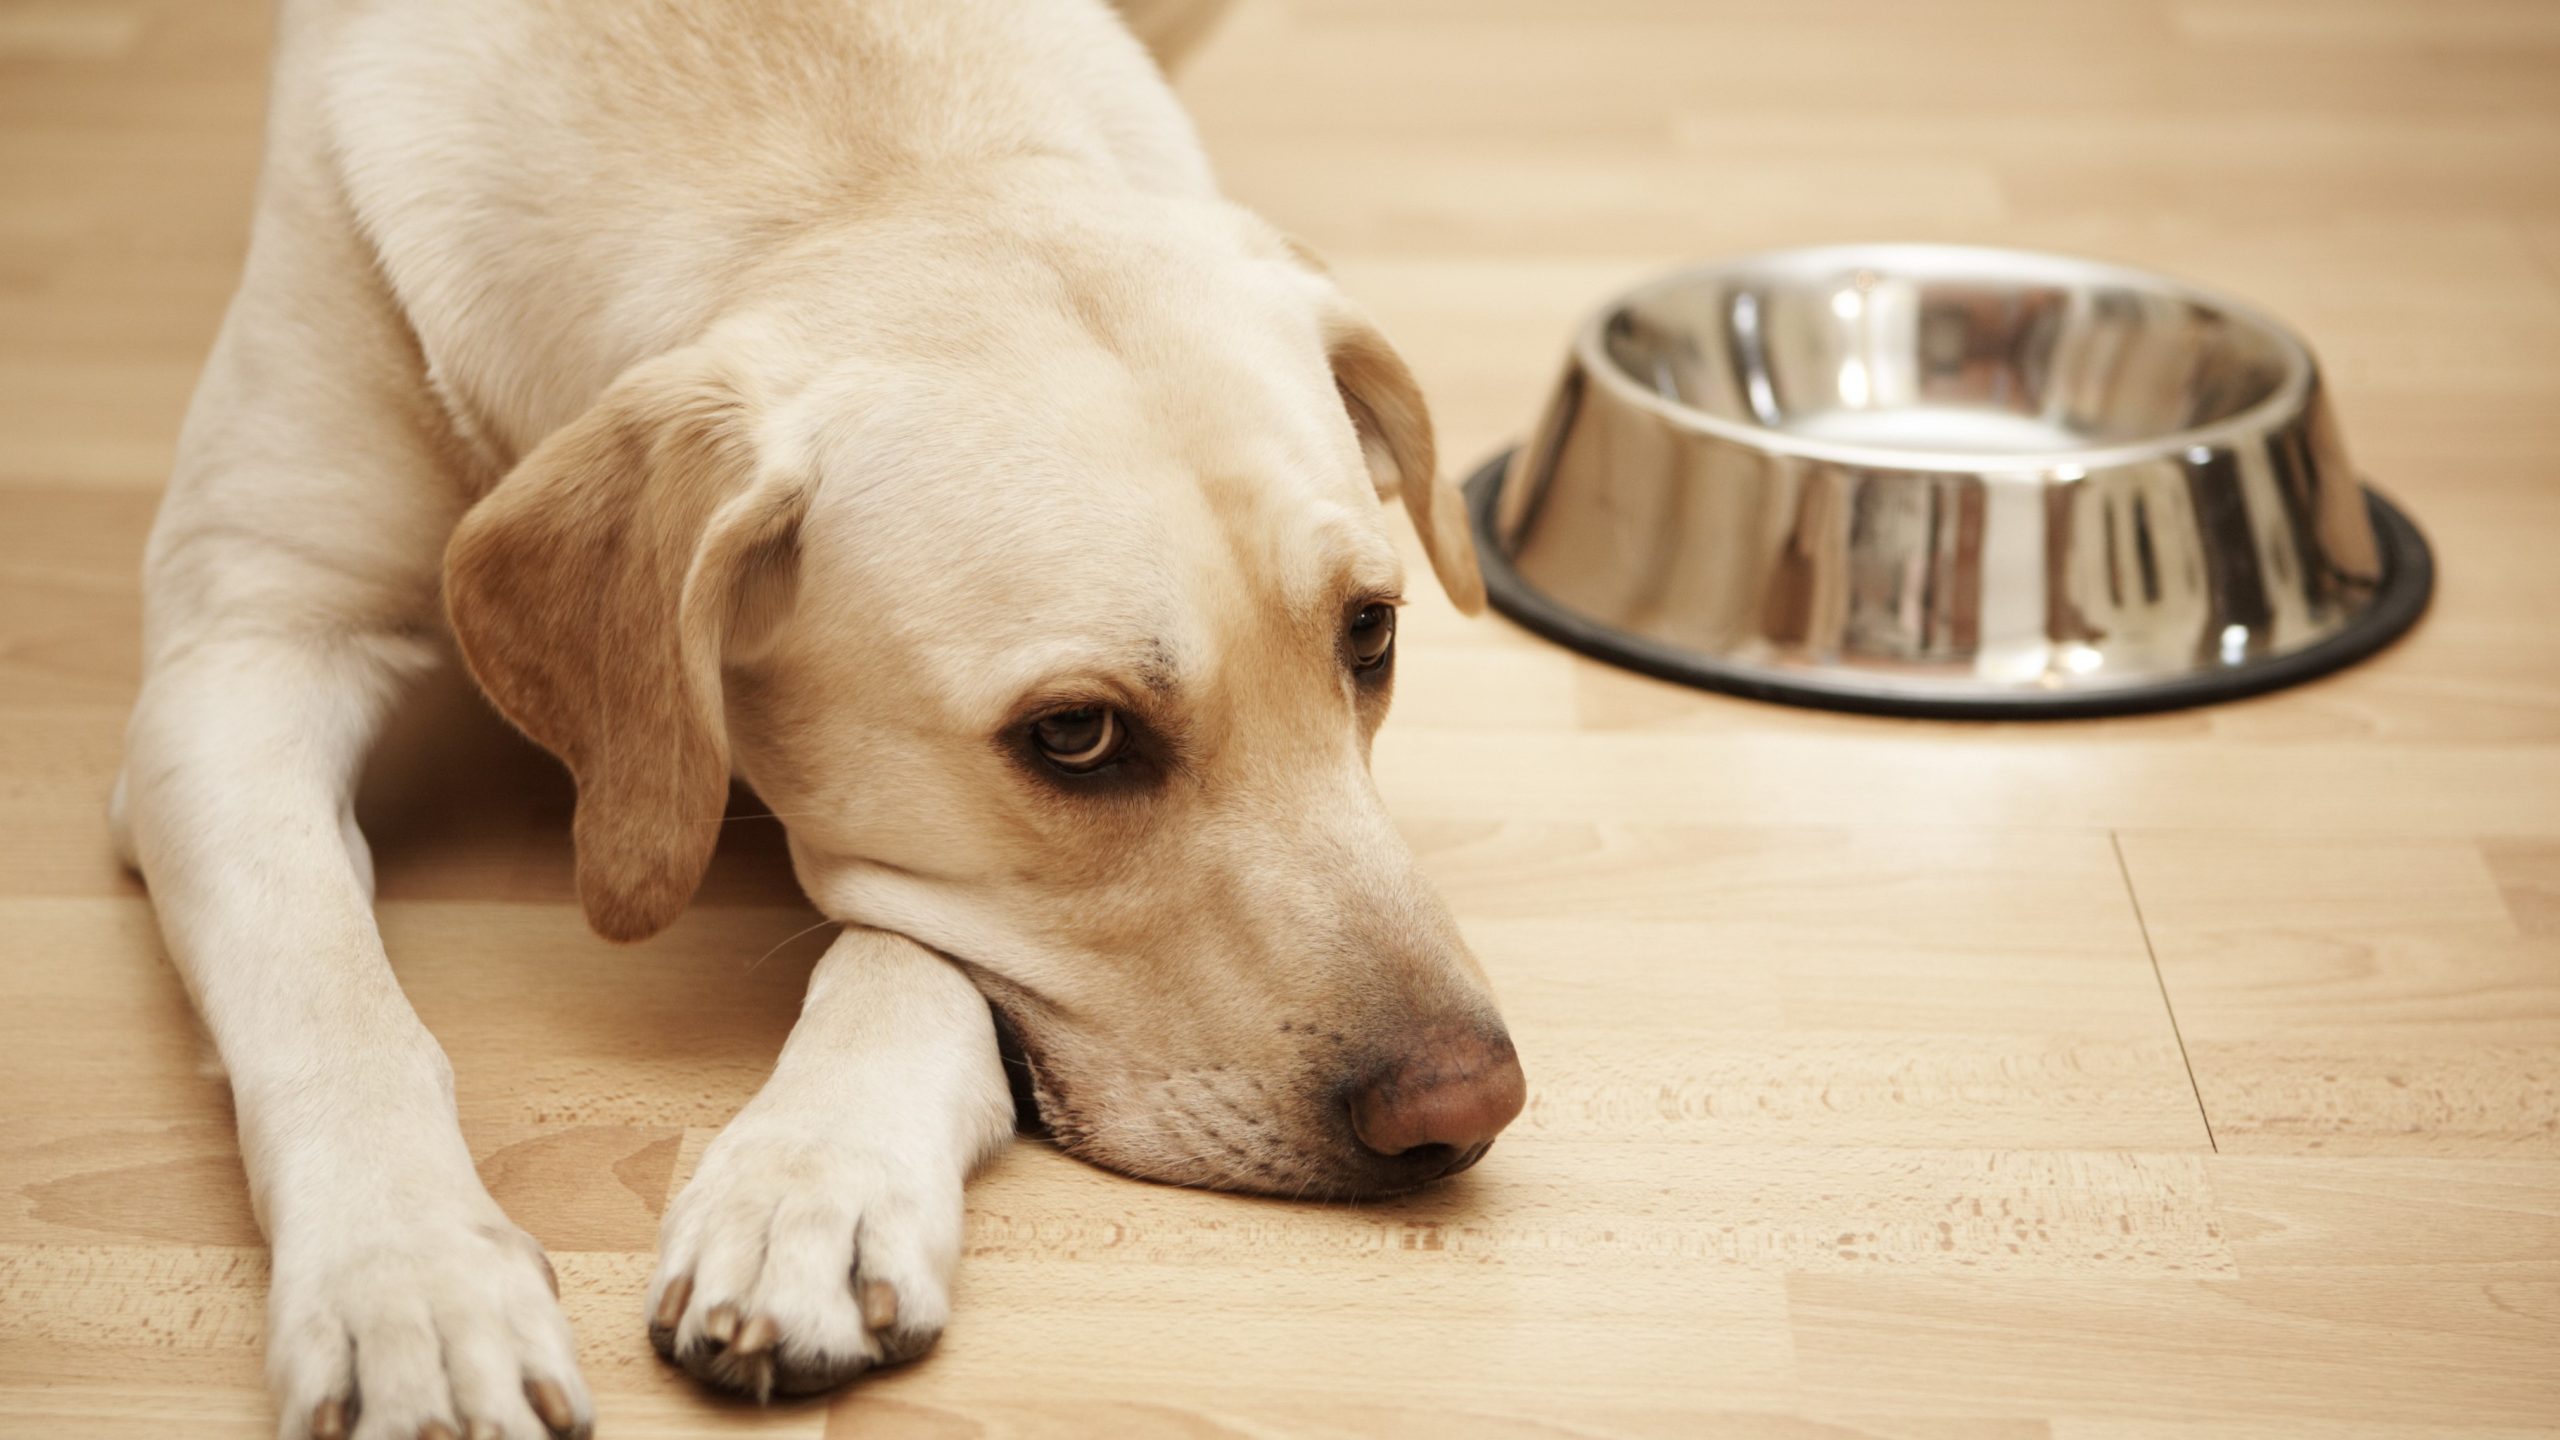 Estudio revela que los perros se vuelven más negativos al oler el estrés humano